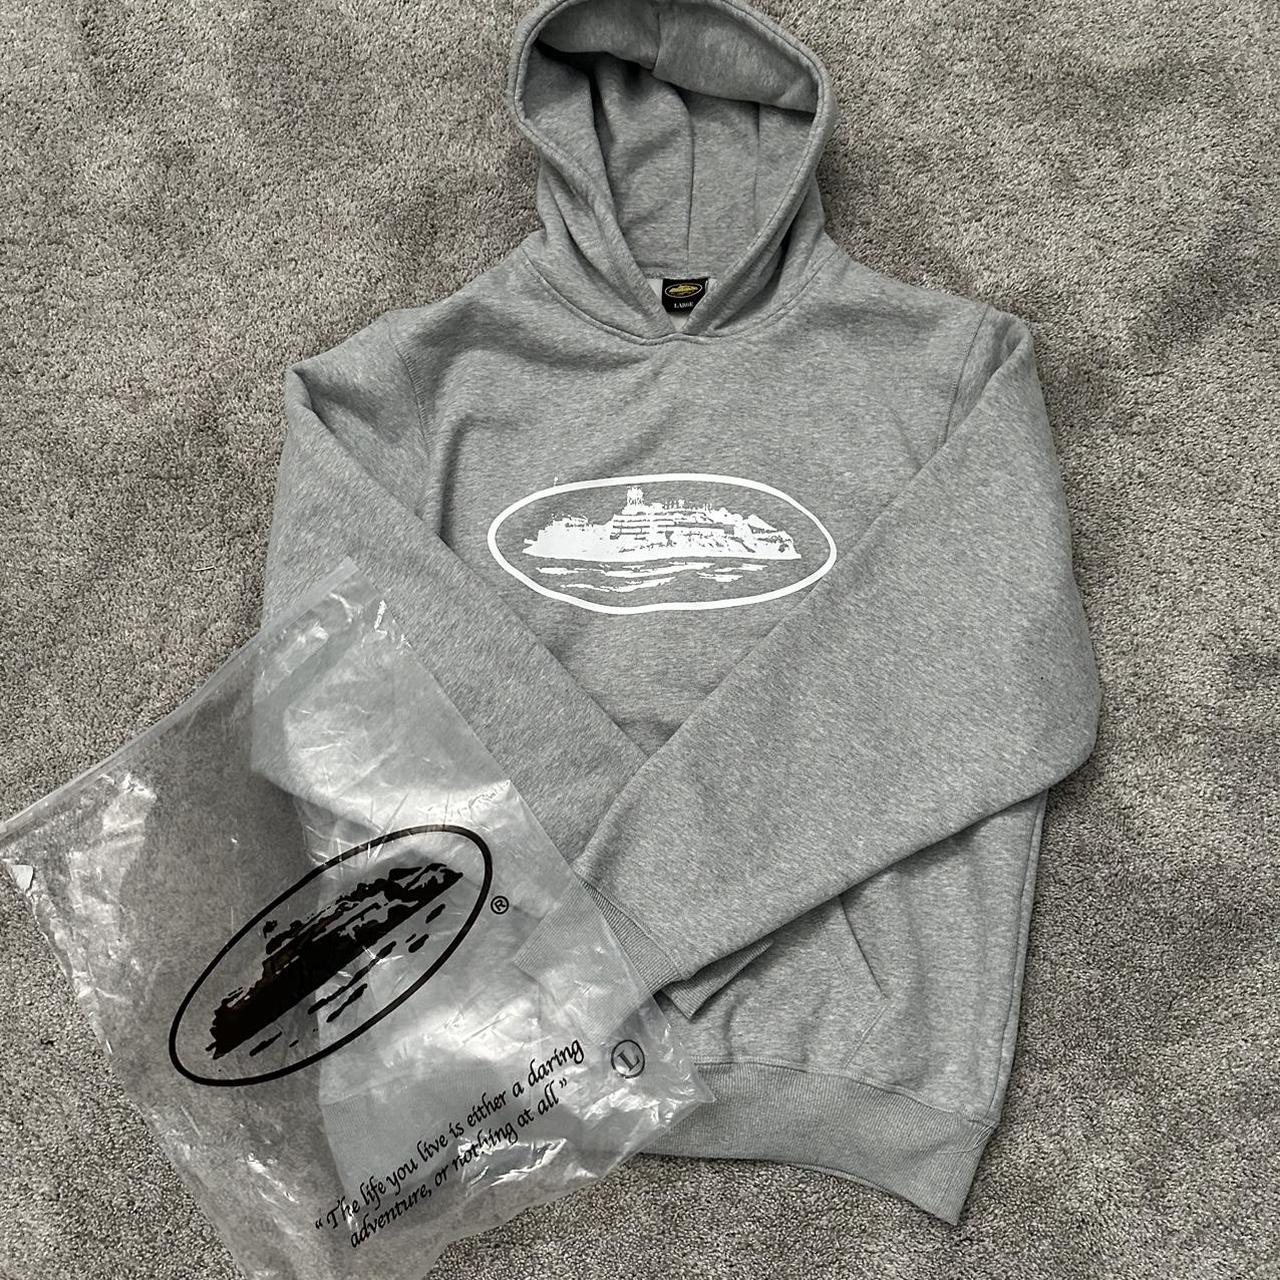 Corteiz hoodie in grey size men’s L - Depop